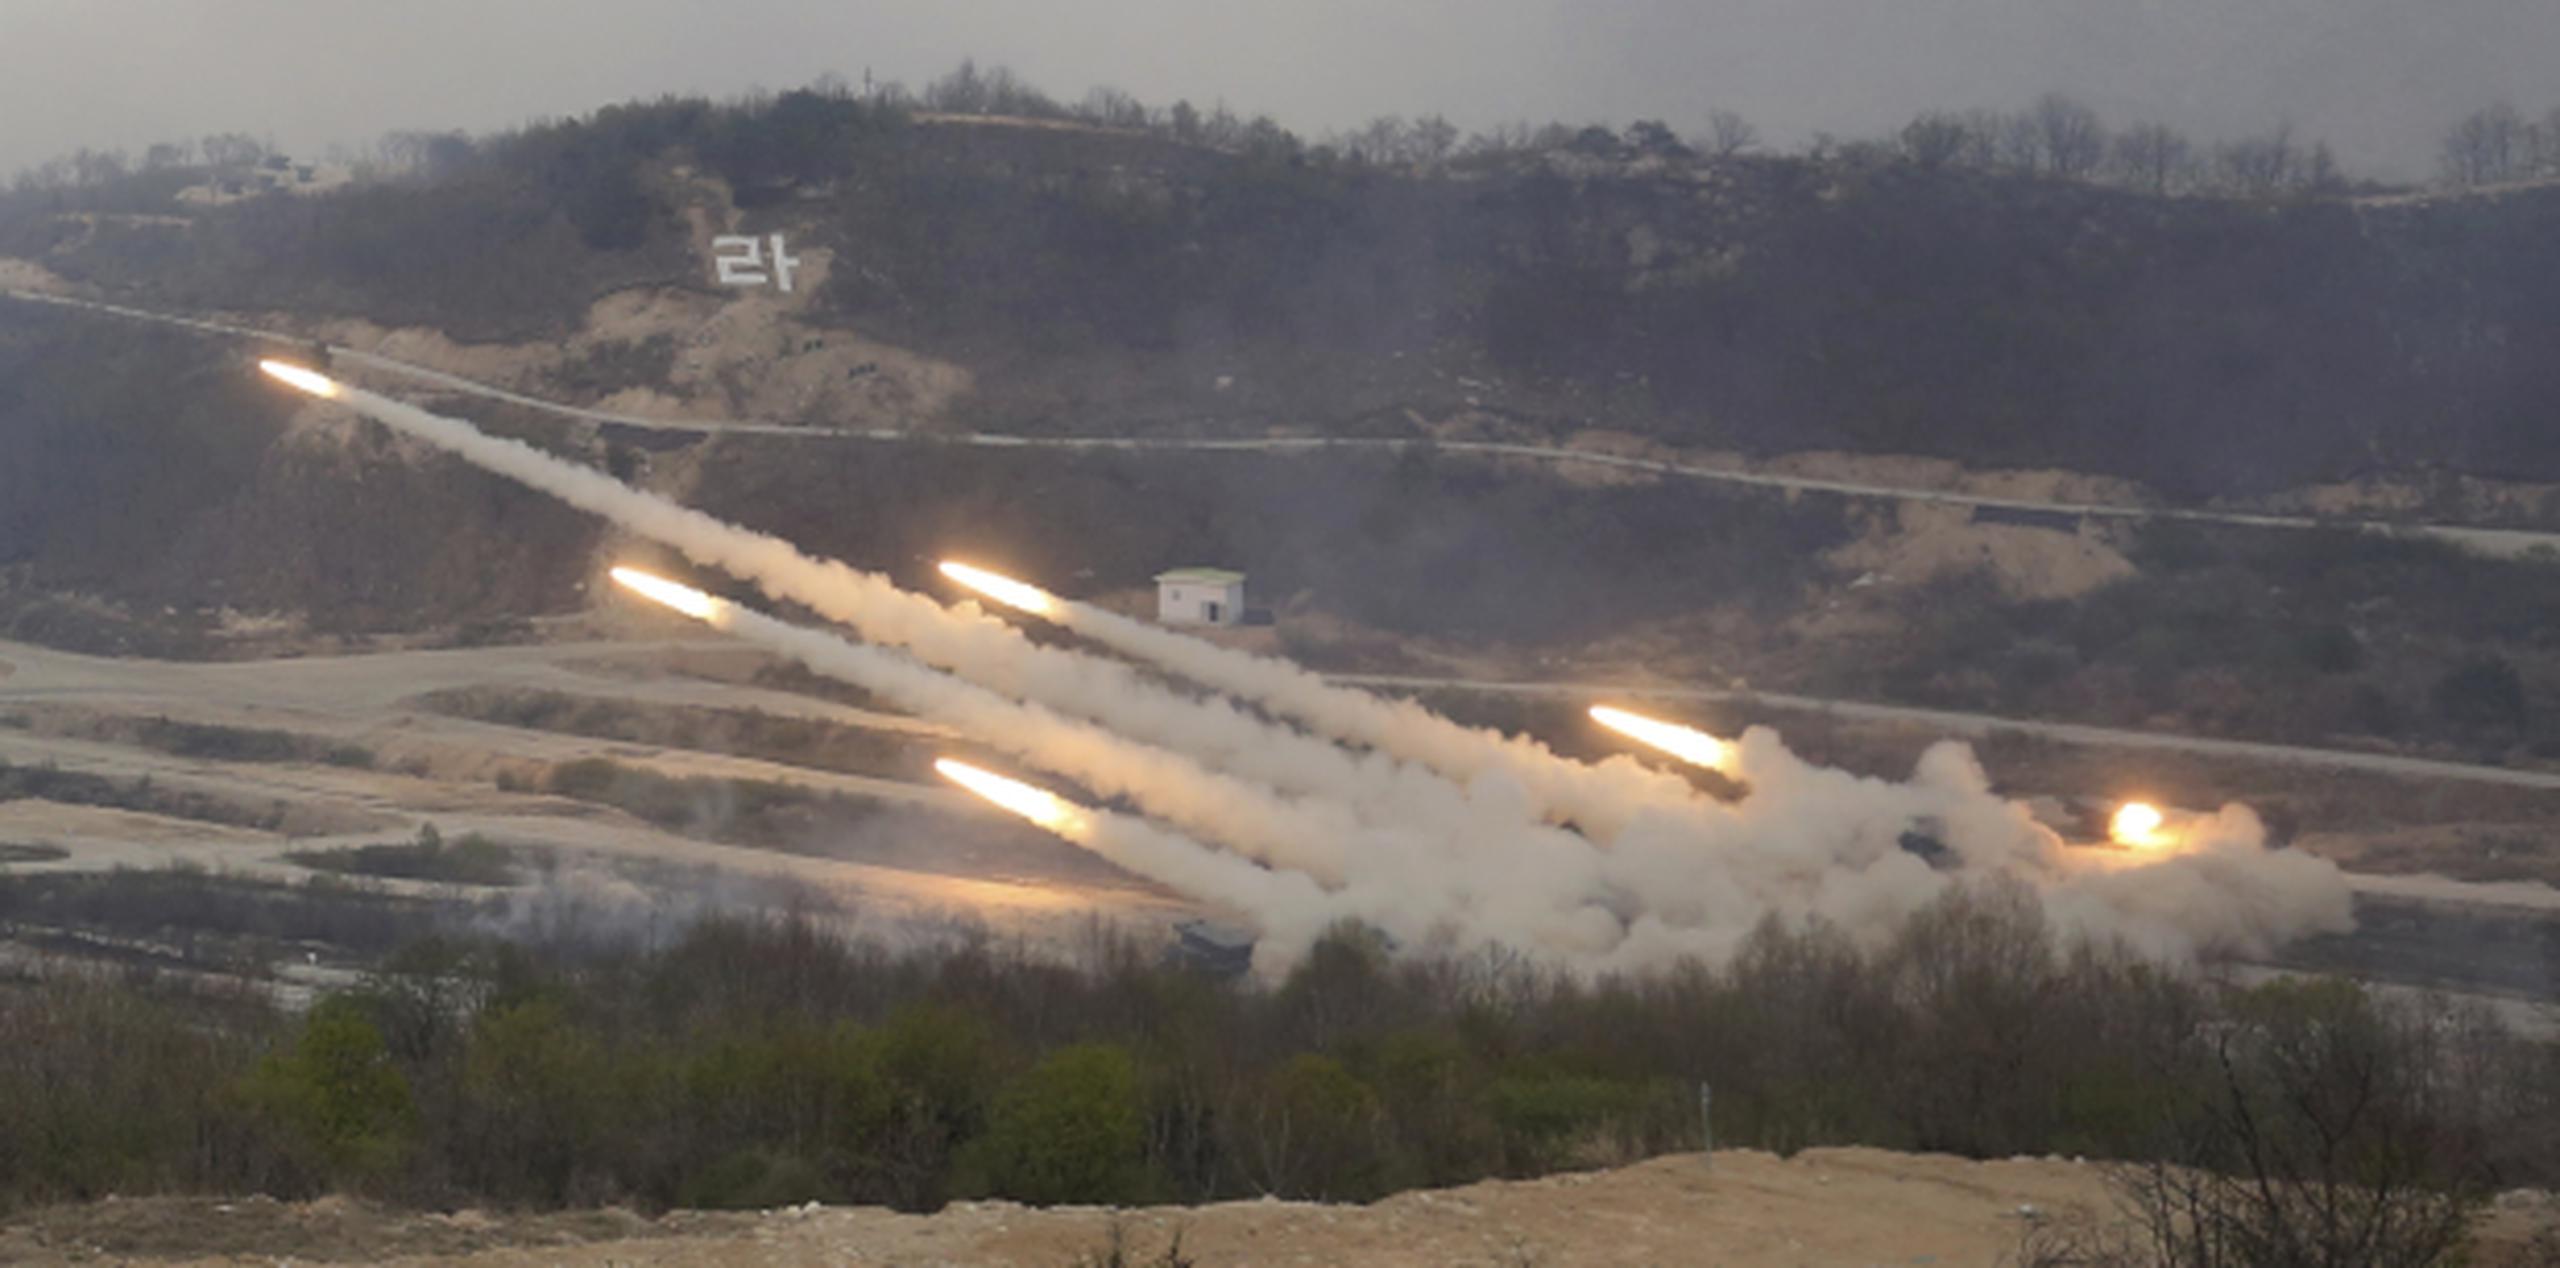 La tensión en la península coreana ha subido al tiempo que se llevan a cabo ejercicios militares a ambos lados de la frontera entre Corea del Norte y Corea del Sur. (AP/Ahn Young-joon)
